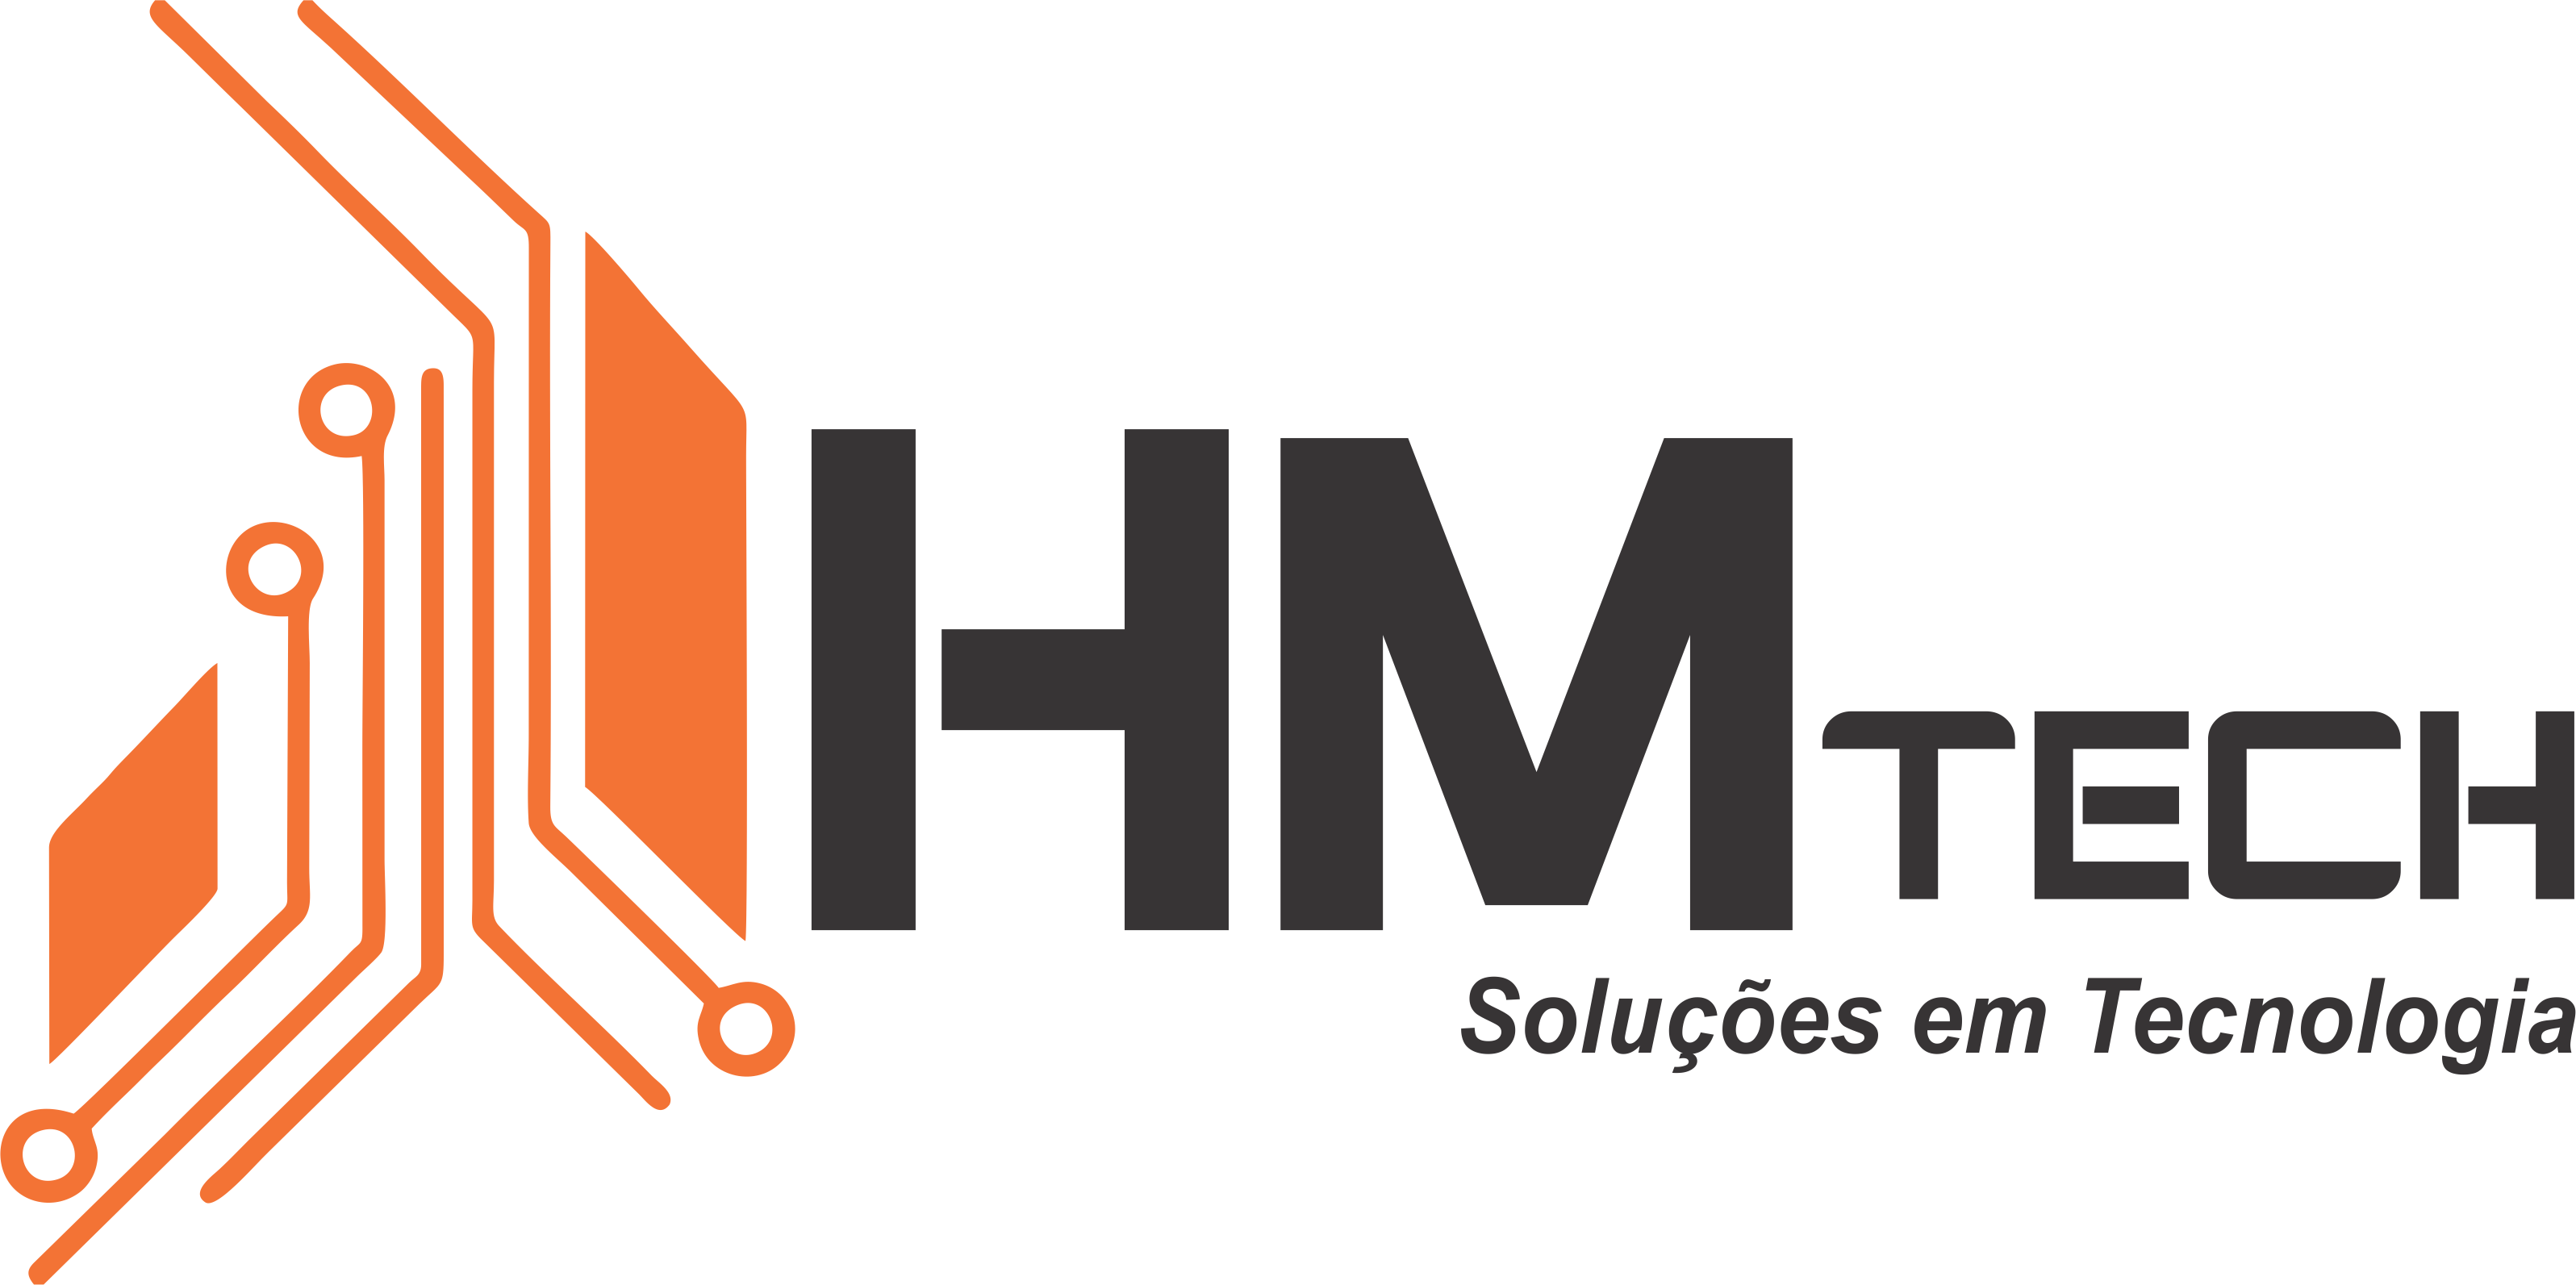 hmtech logo 2018